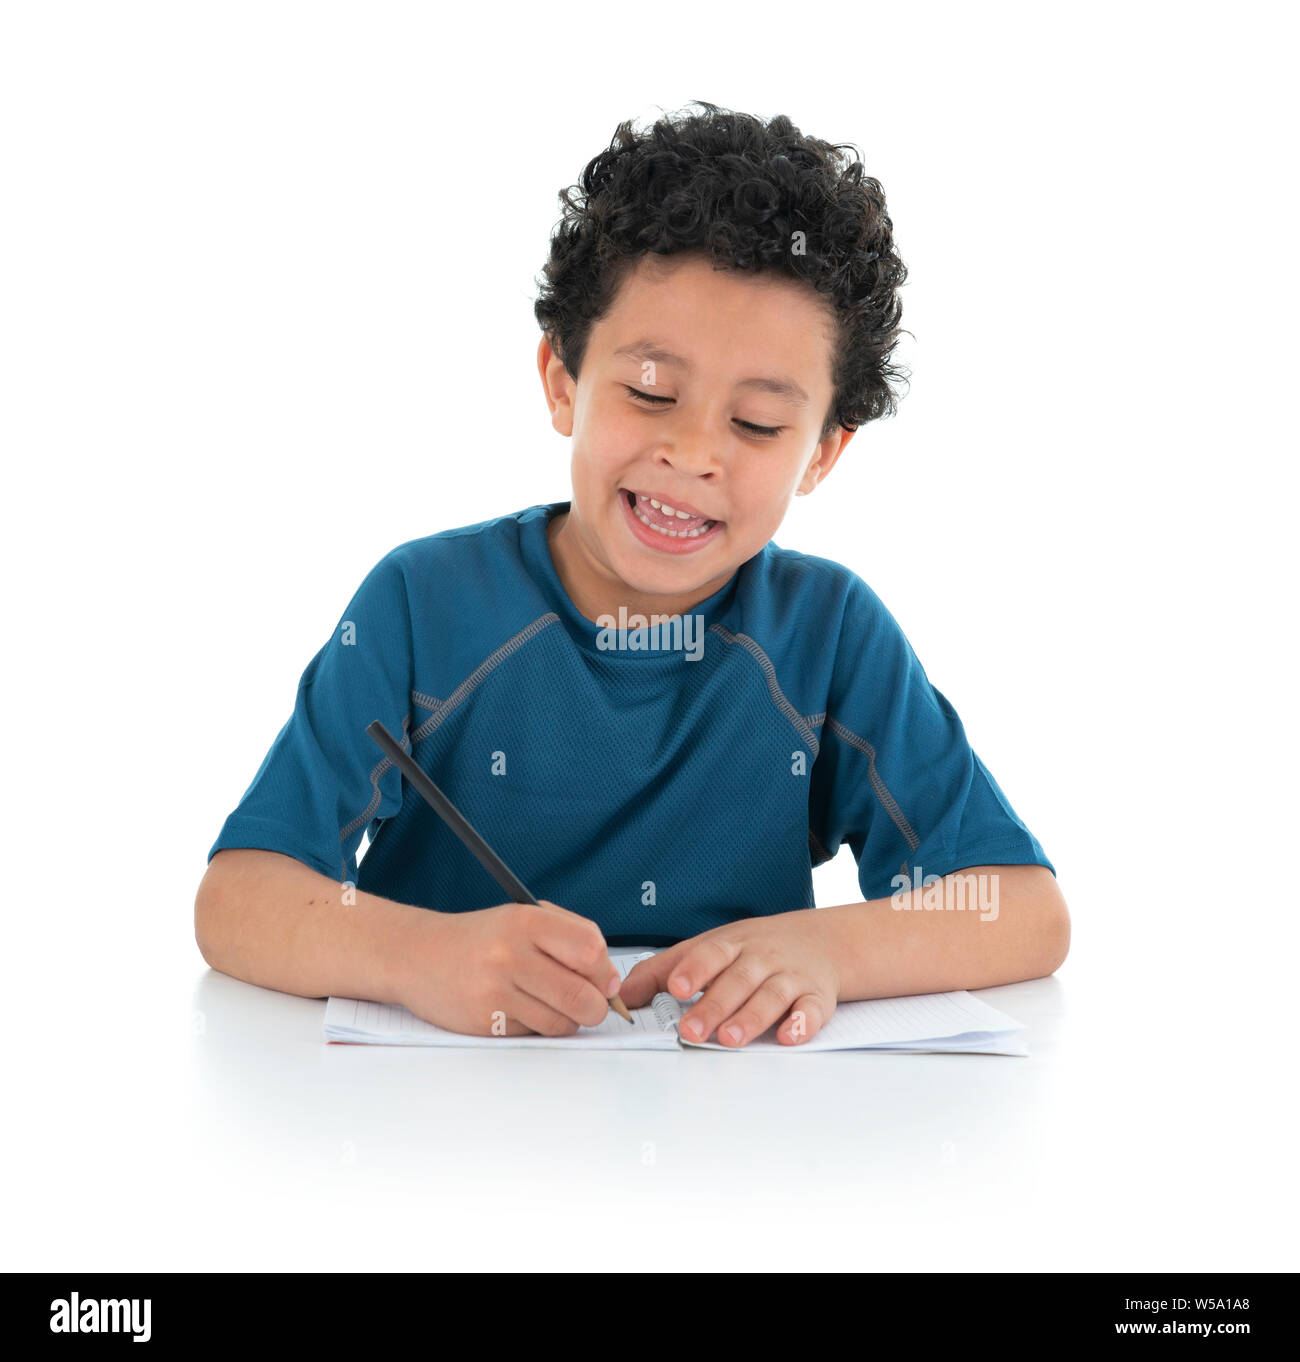 Junge mit lustigen Ausdruck zu studieren und zu Hause arbeiten, Schreiben mit Bleistift, Studio Shot, isoliert auf weißem Hintergrund Stockfoto